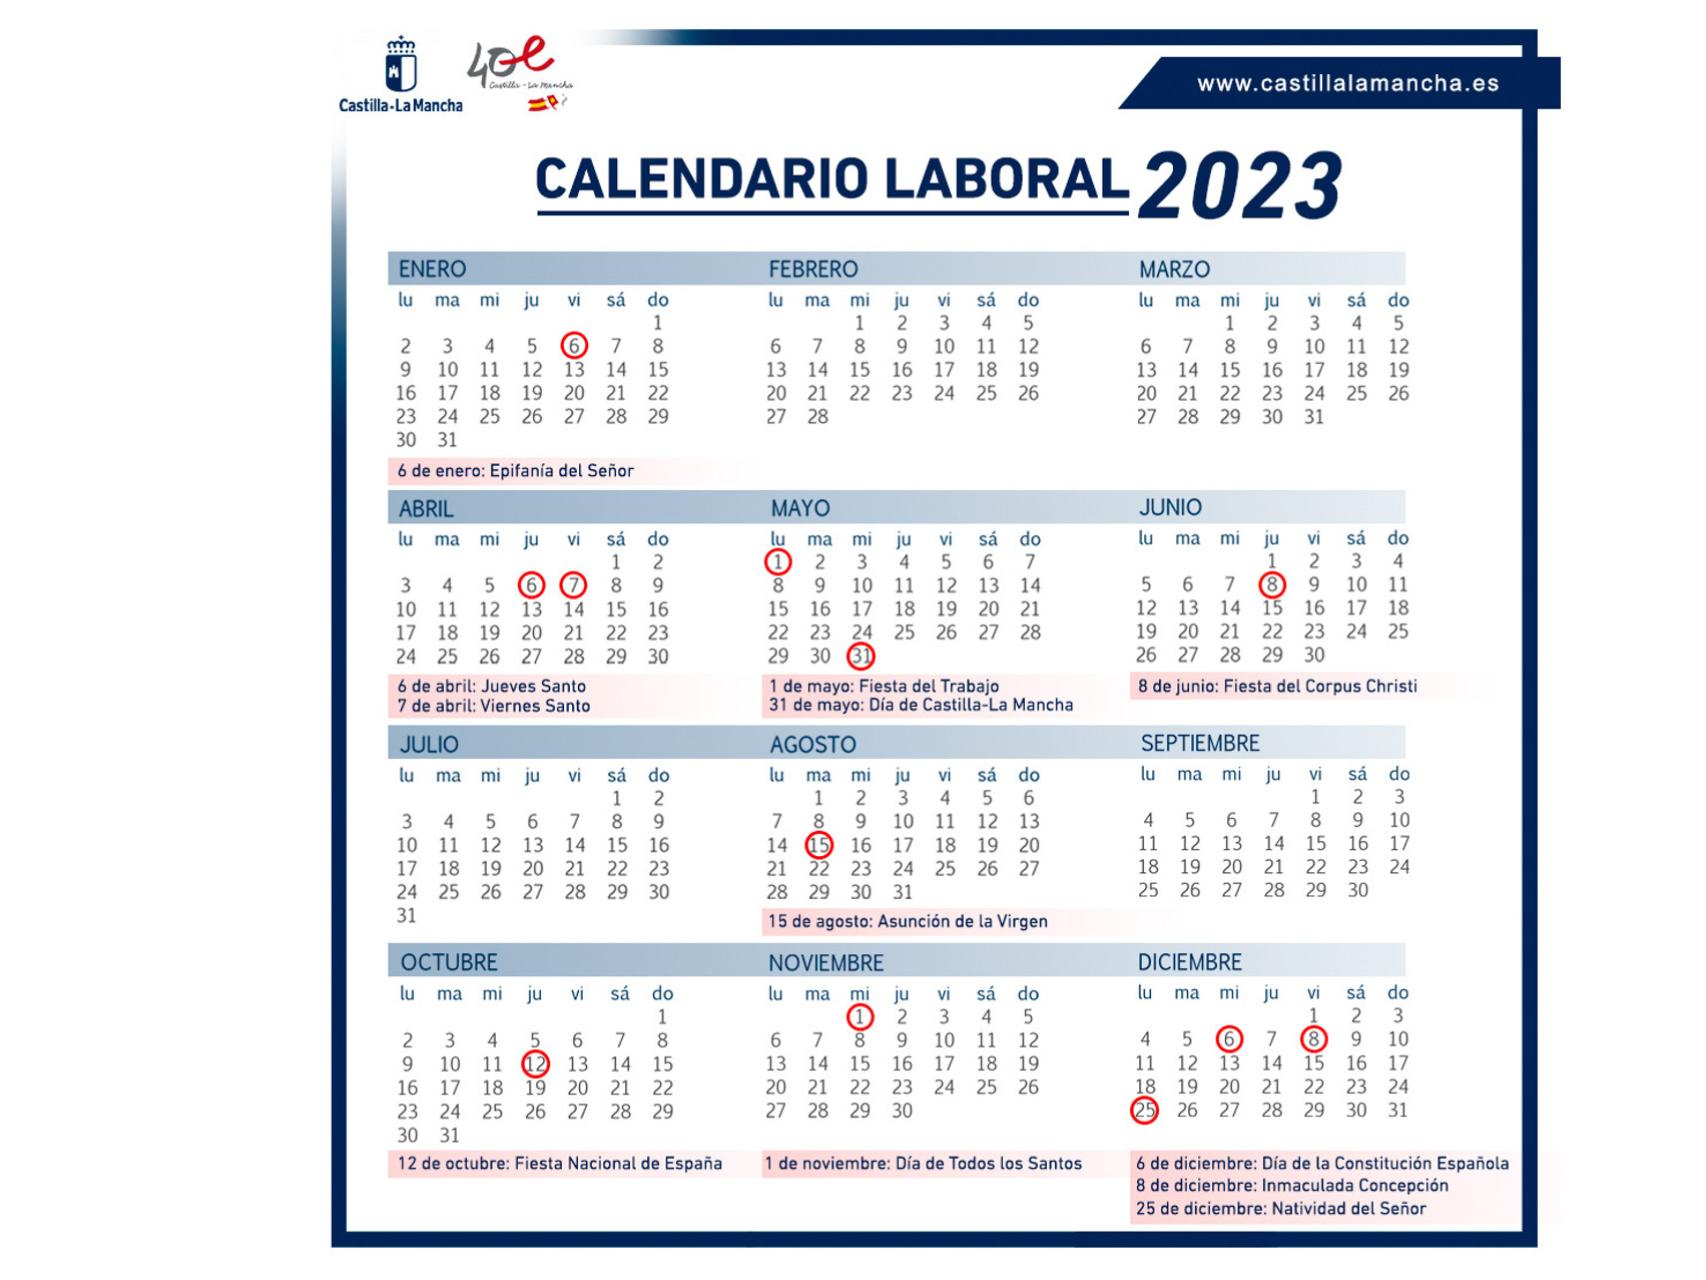 Así queda el calendario laboral de 2023 en CastillaLa Mancha festivos